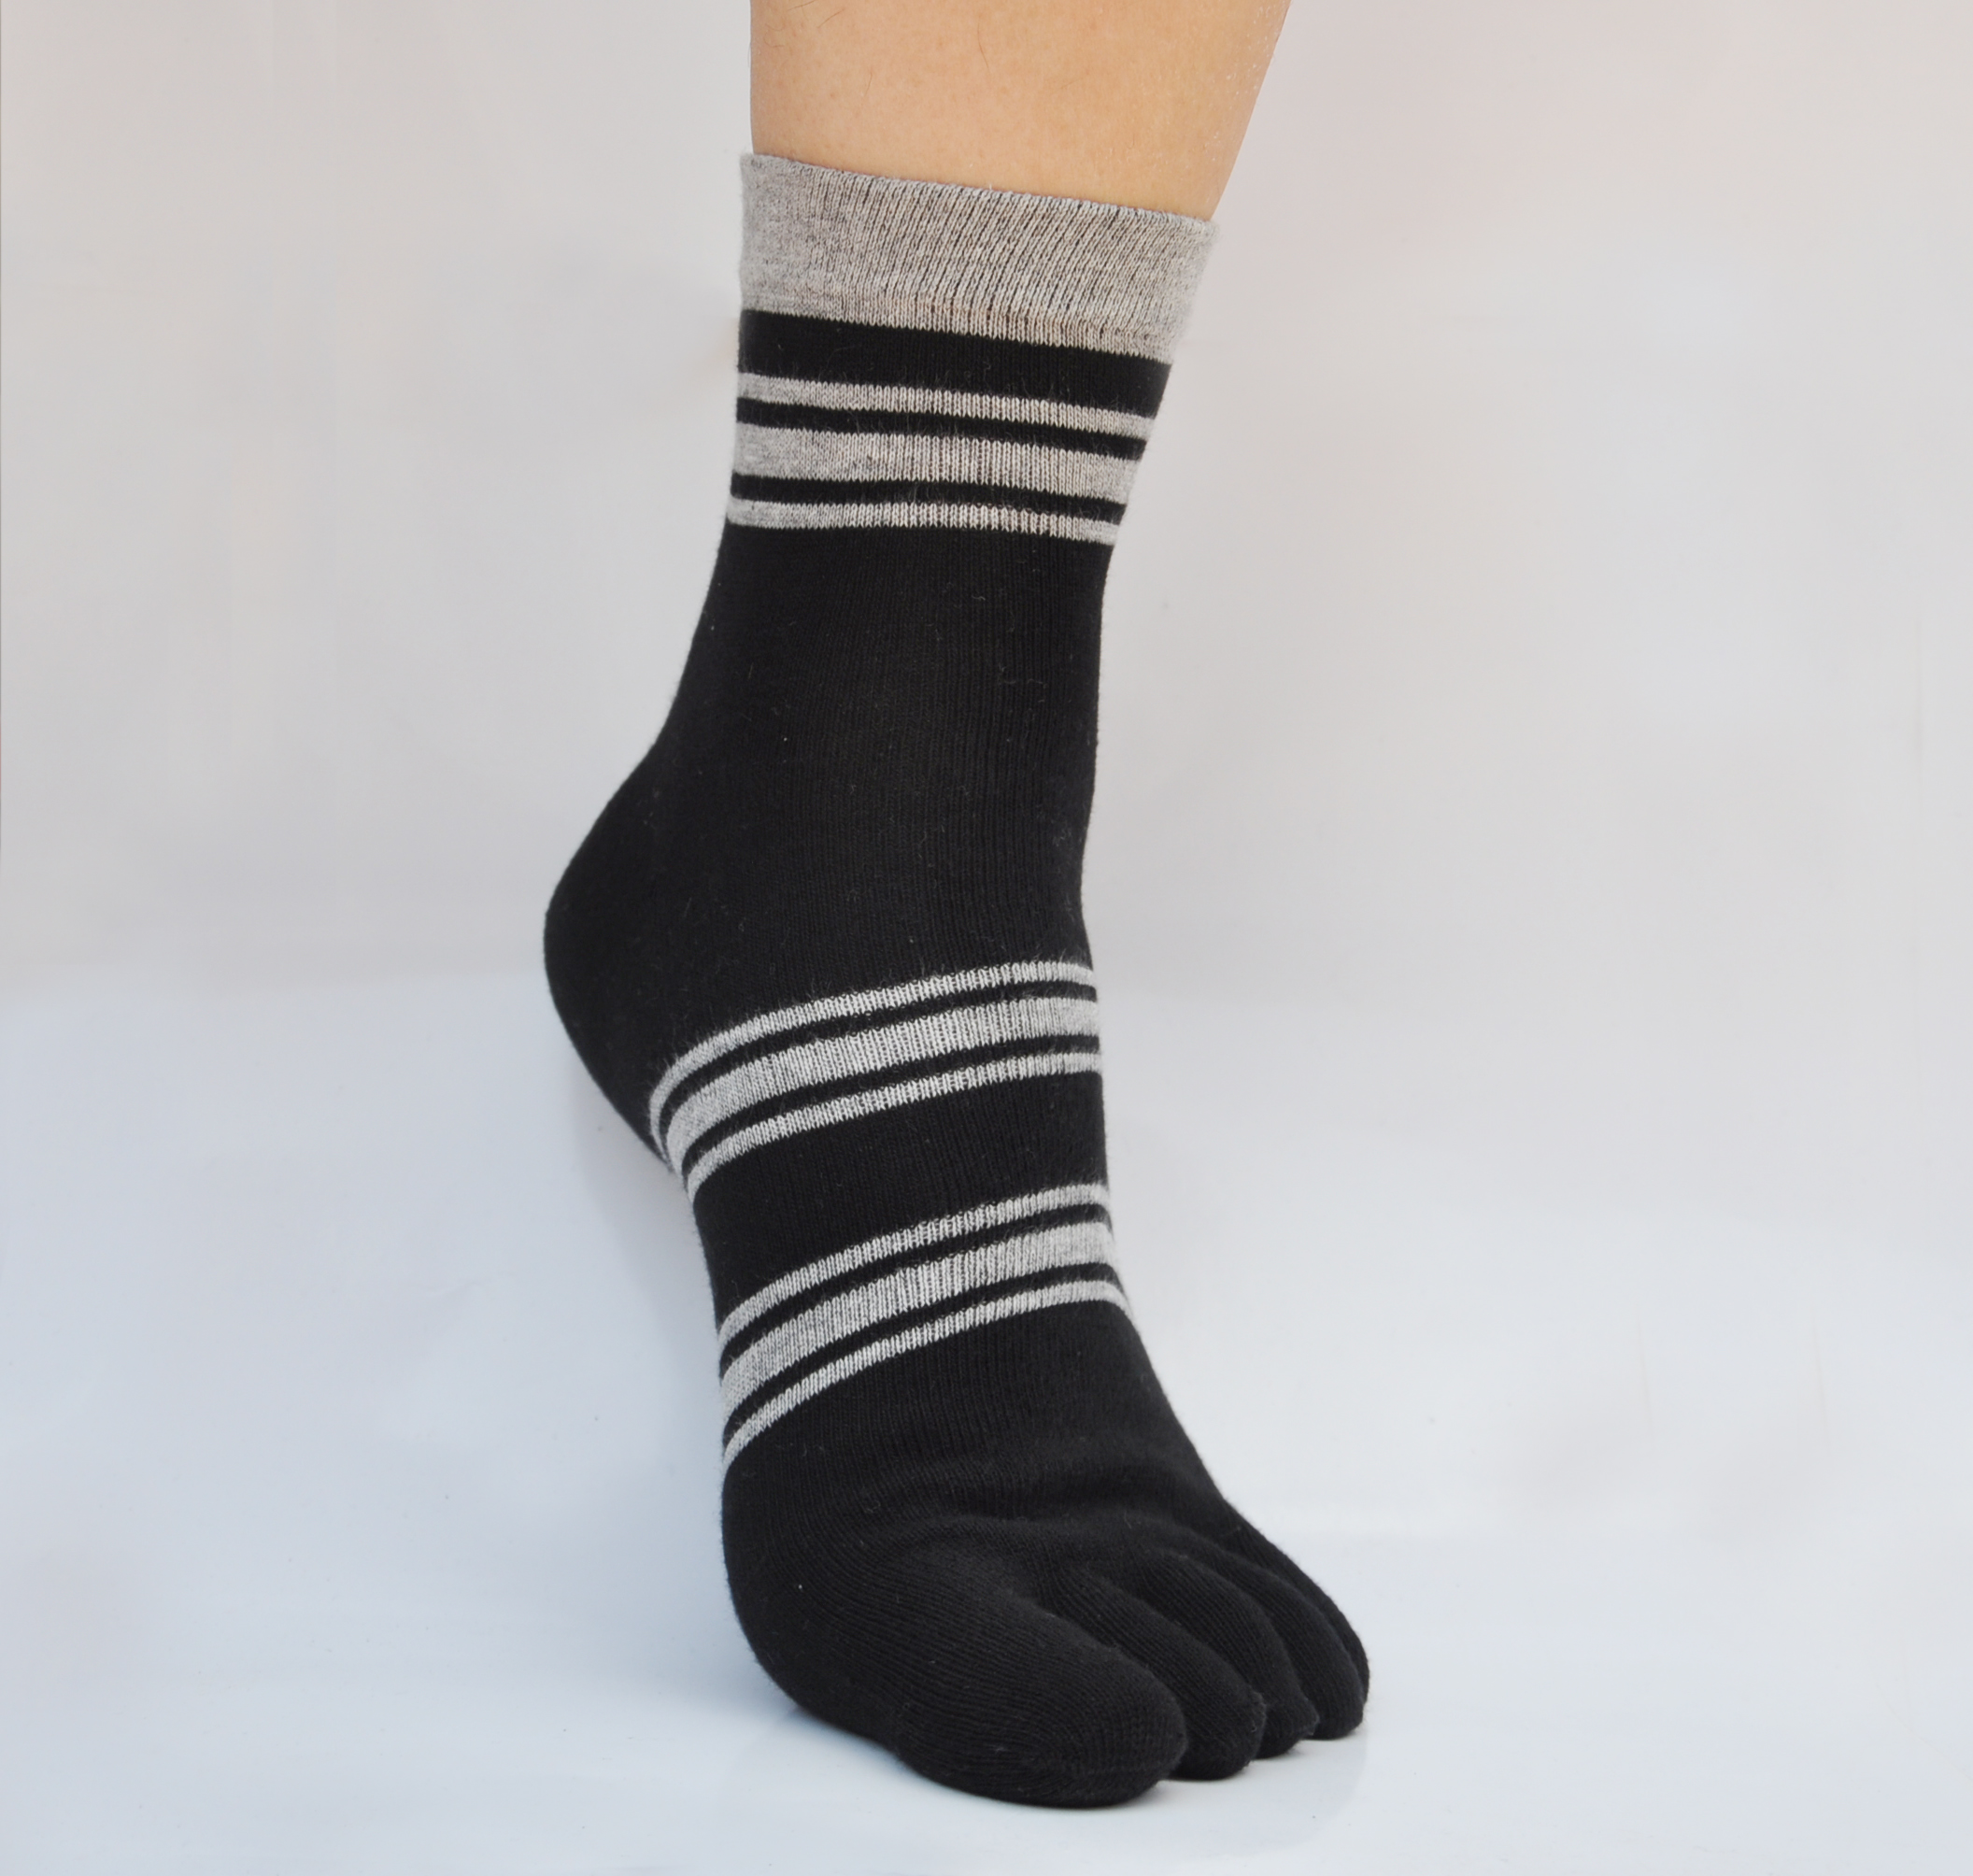 五指舒袜厂家生产杠条纯棉袜子男士多色批发定做带跟中筒中厚包邮